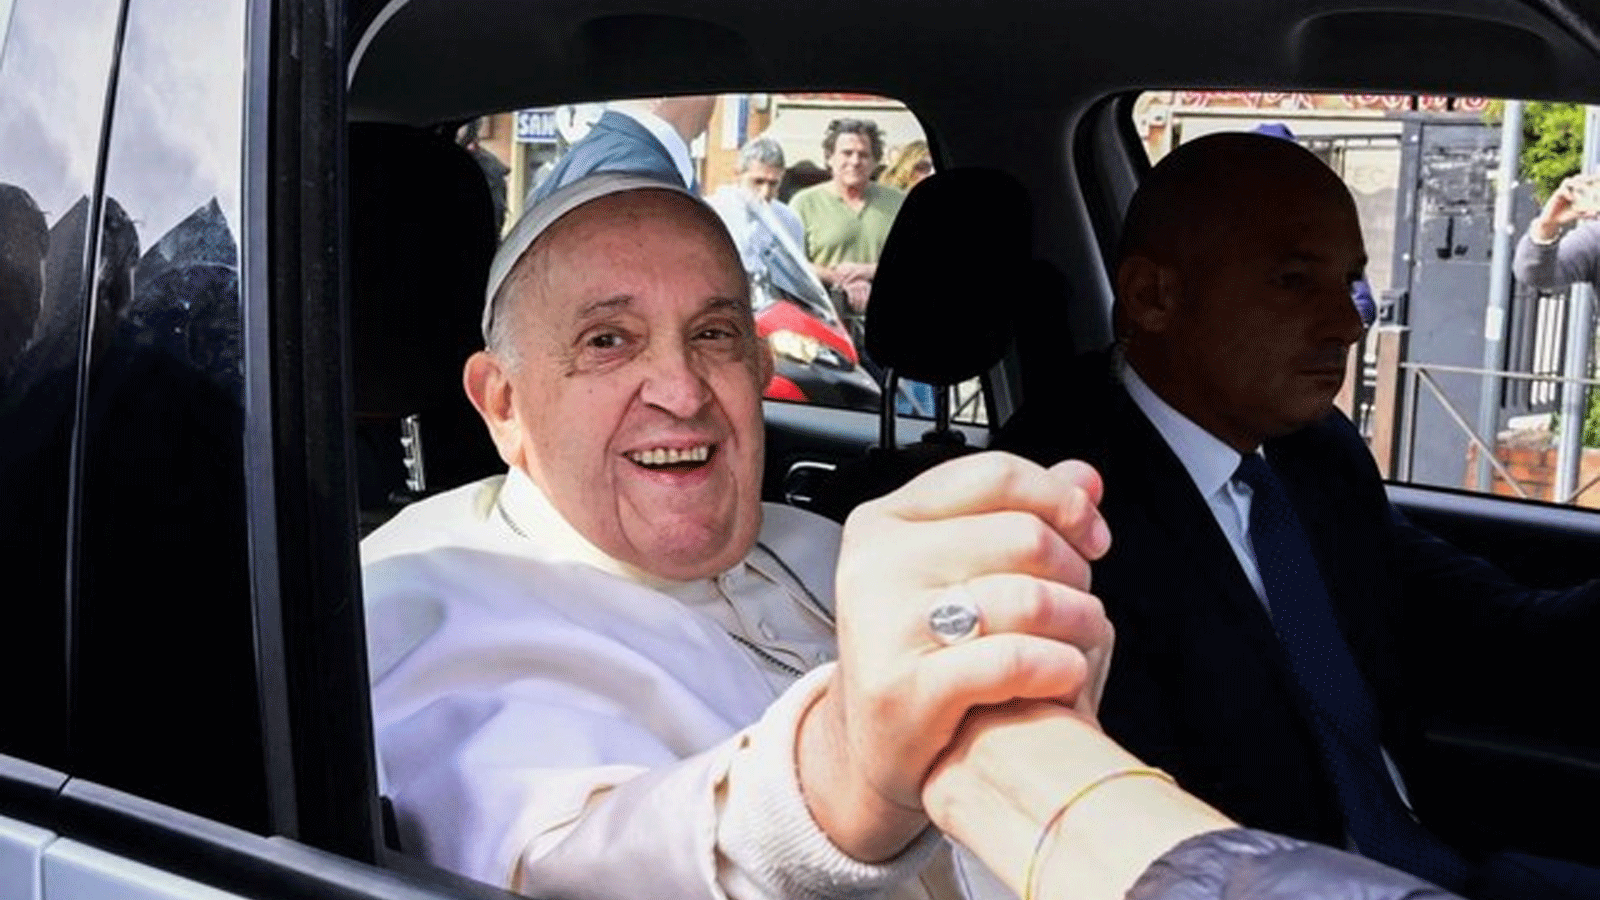 البابا فرنسيس سيجول بين المؤمنين في السيارة البابوية